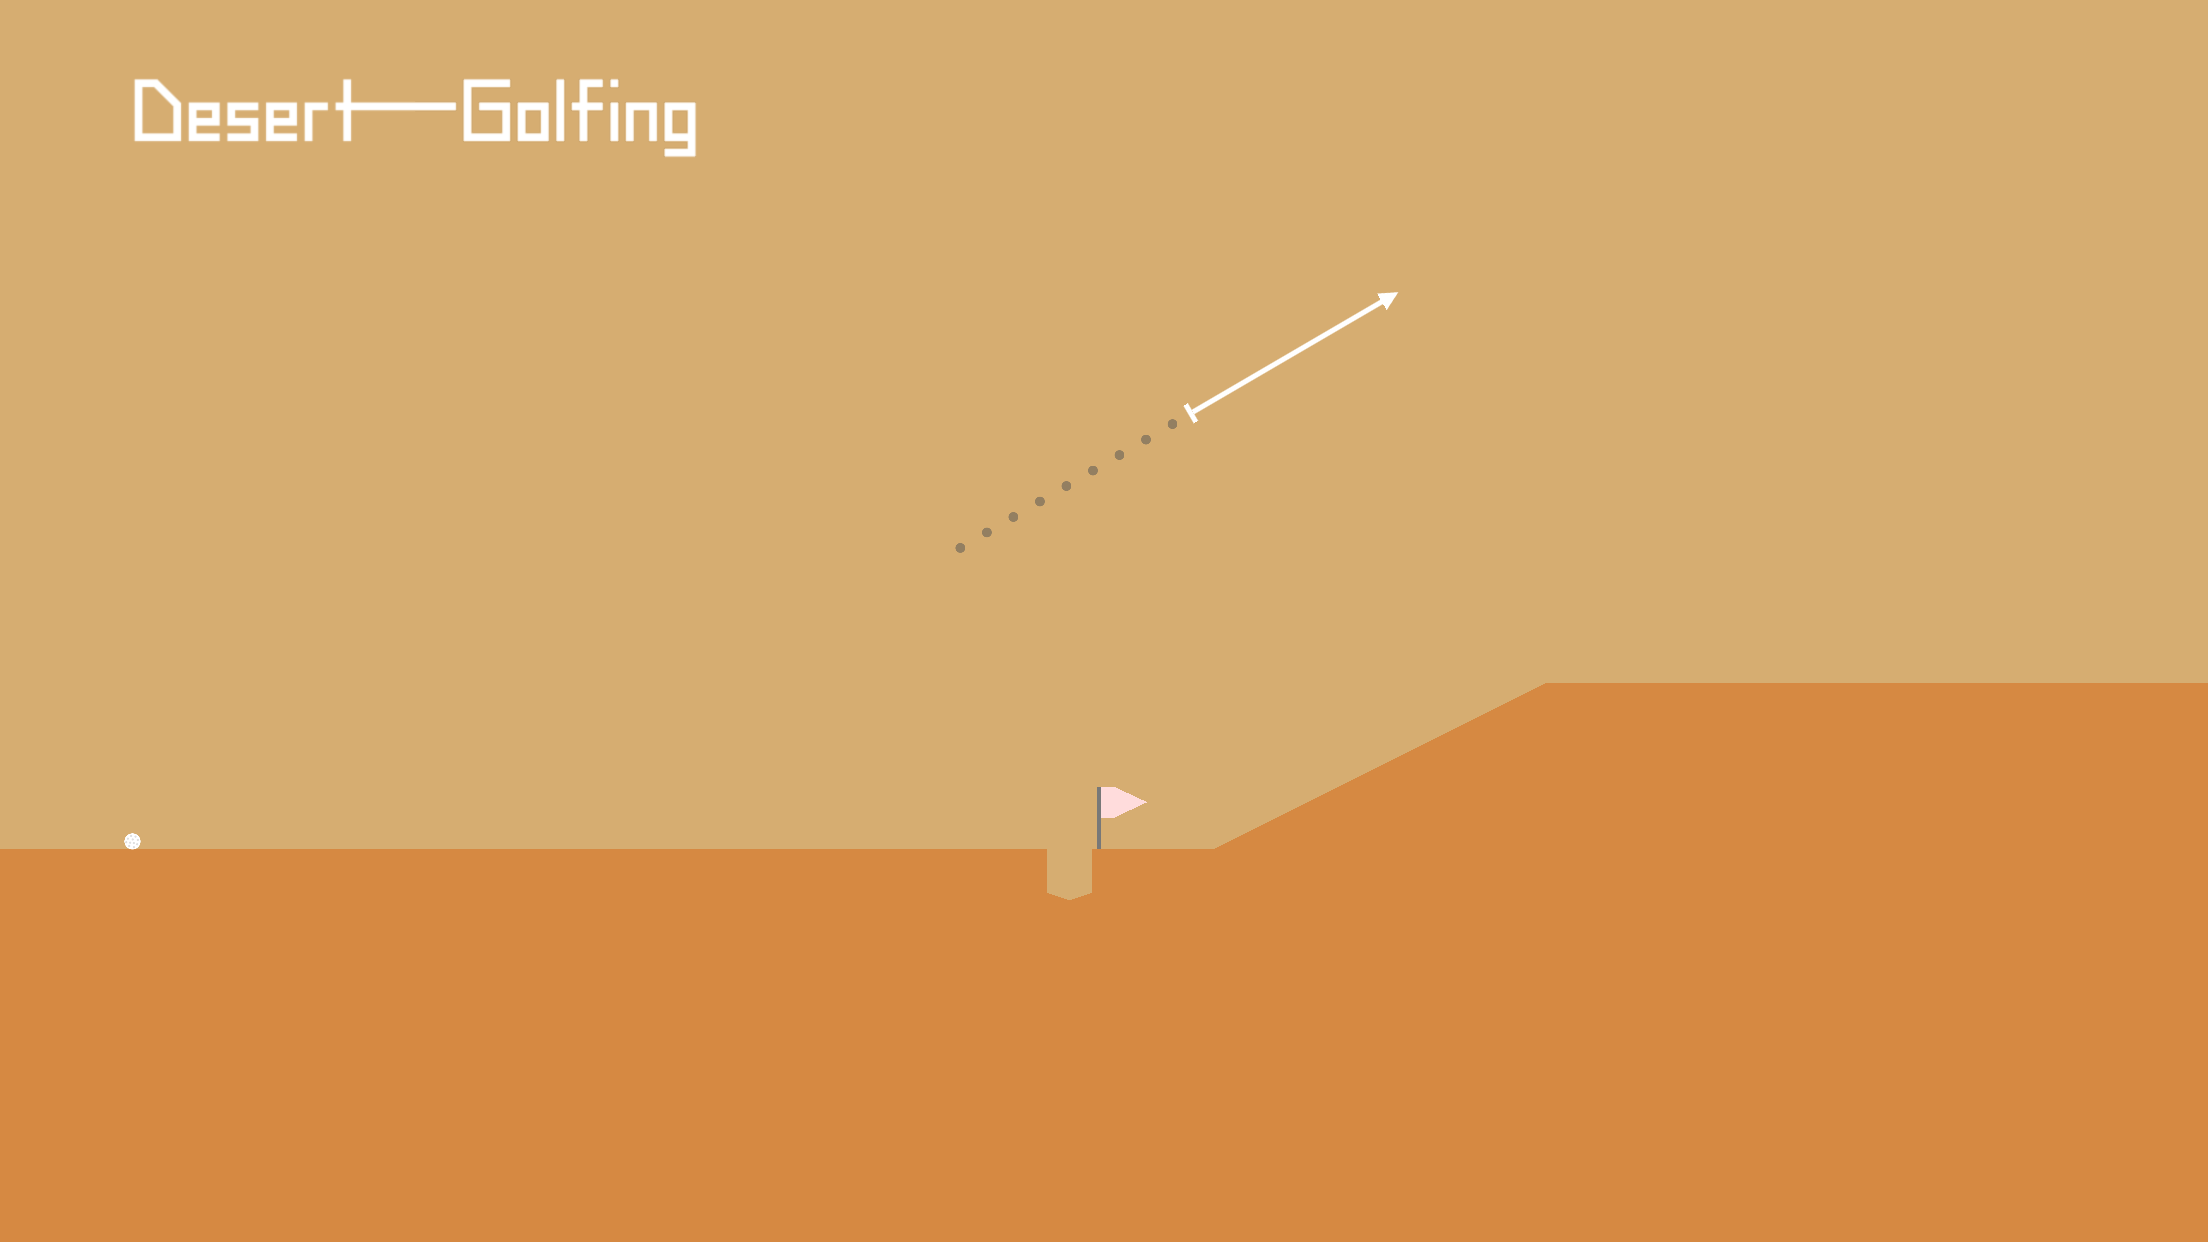 Screenshot 1 of Пустынный гольф 